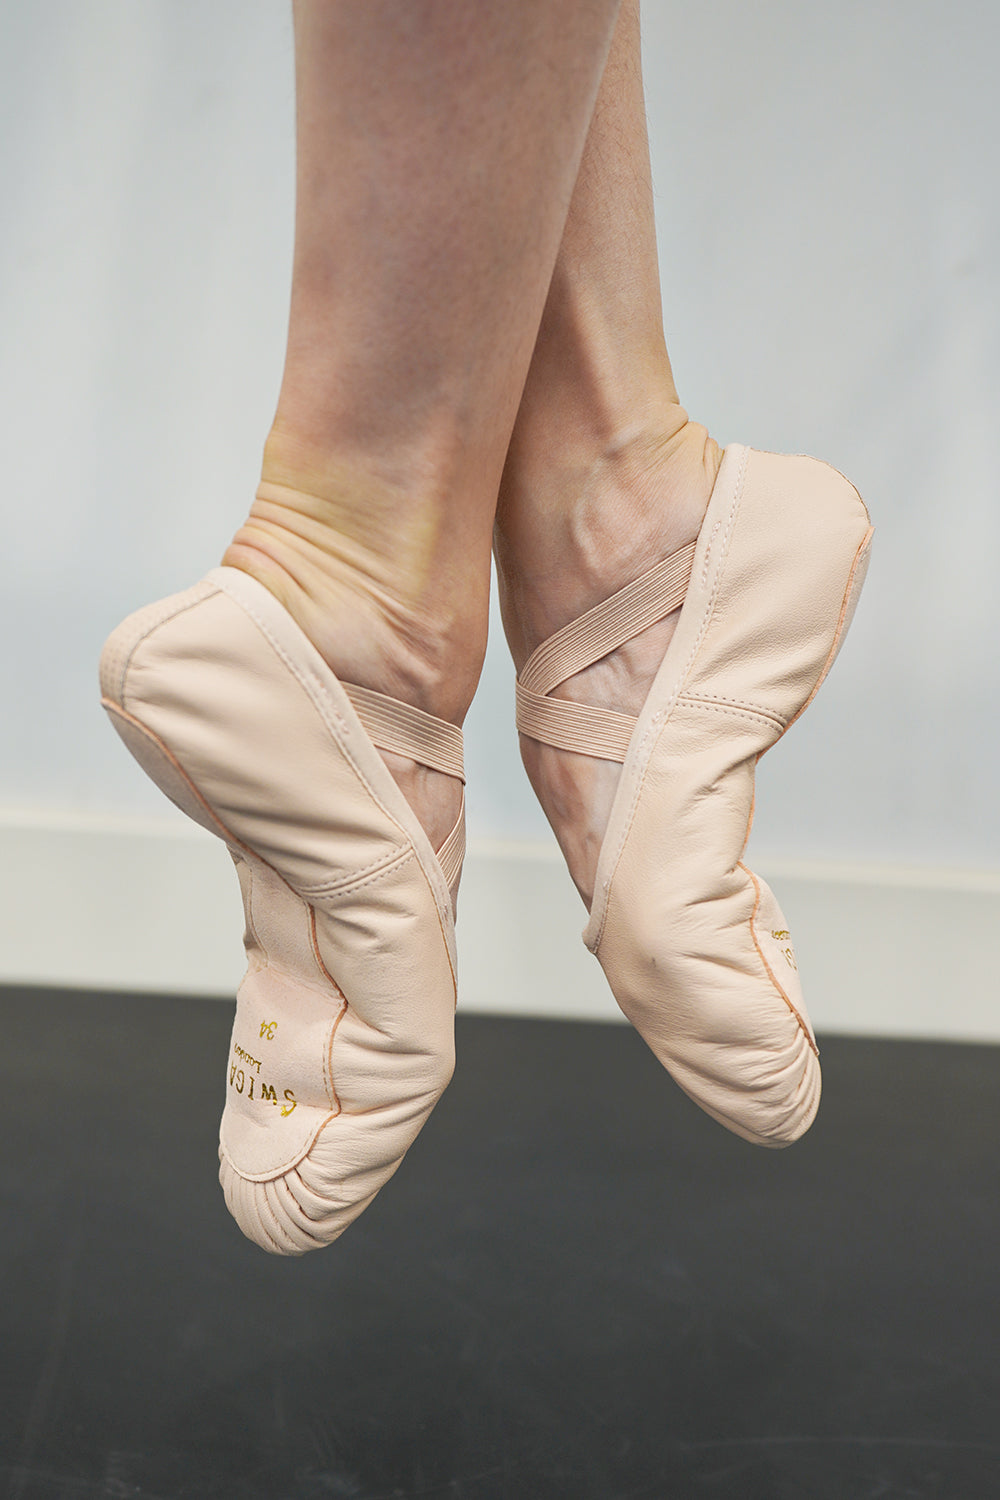 BL-9 Swiga Dance Shoes